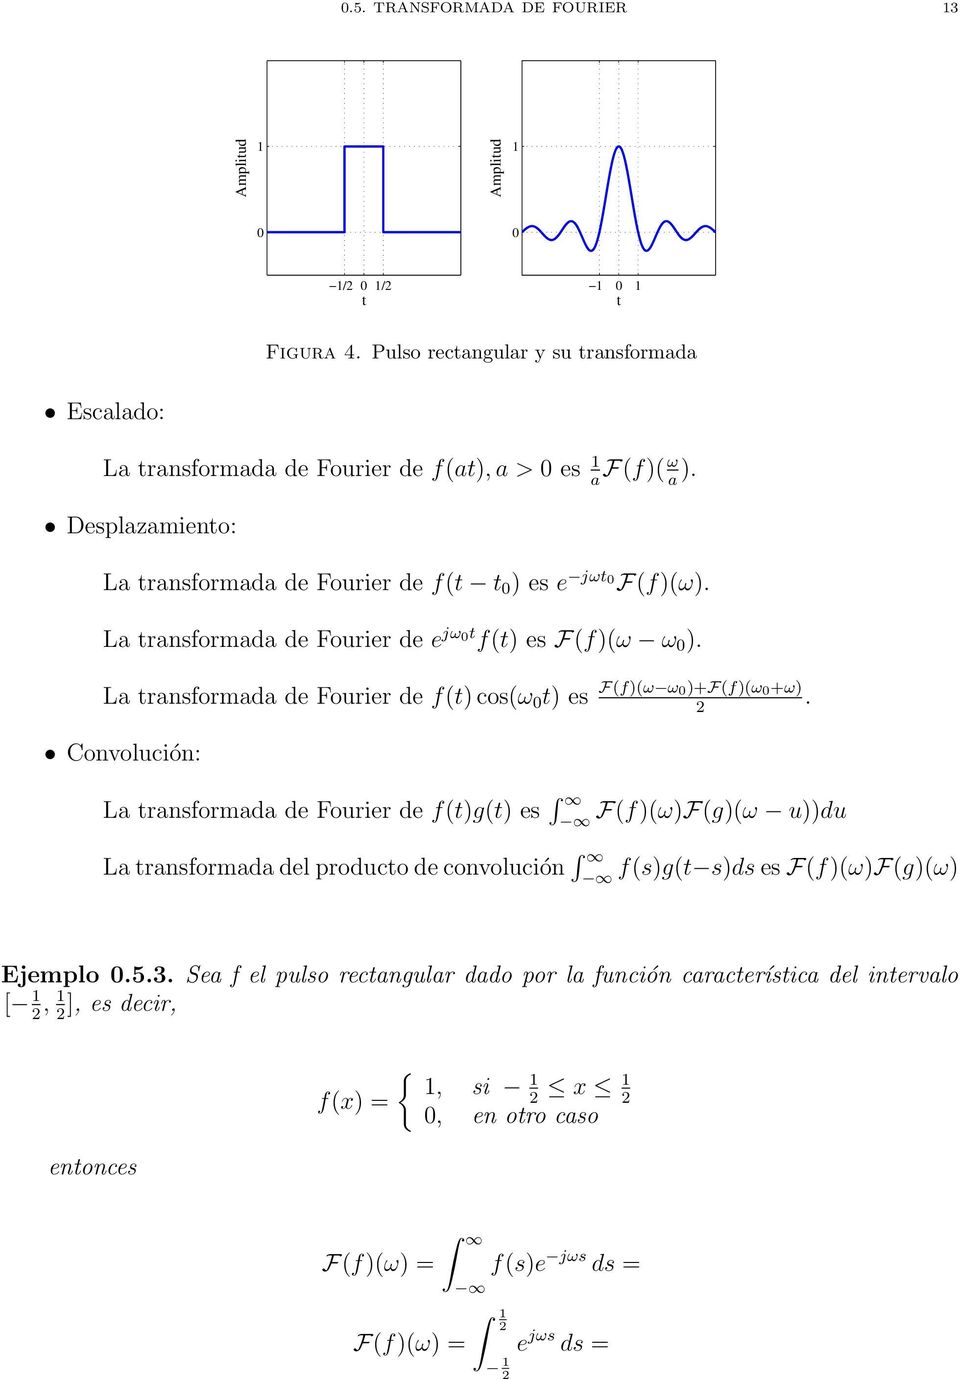 L trnsformd de Fourier de f(t) cos(ω t) es F(f)(ω ω )+F(f)(ω +ω).